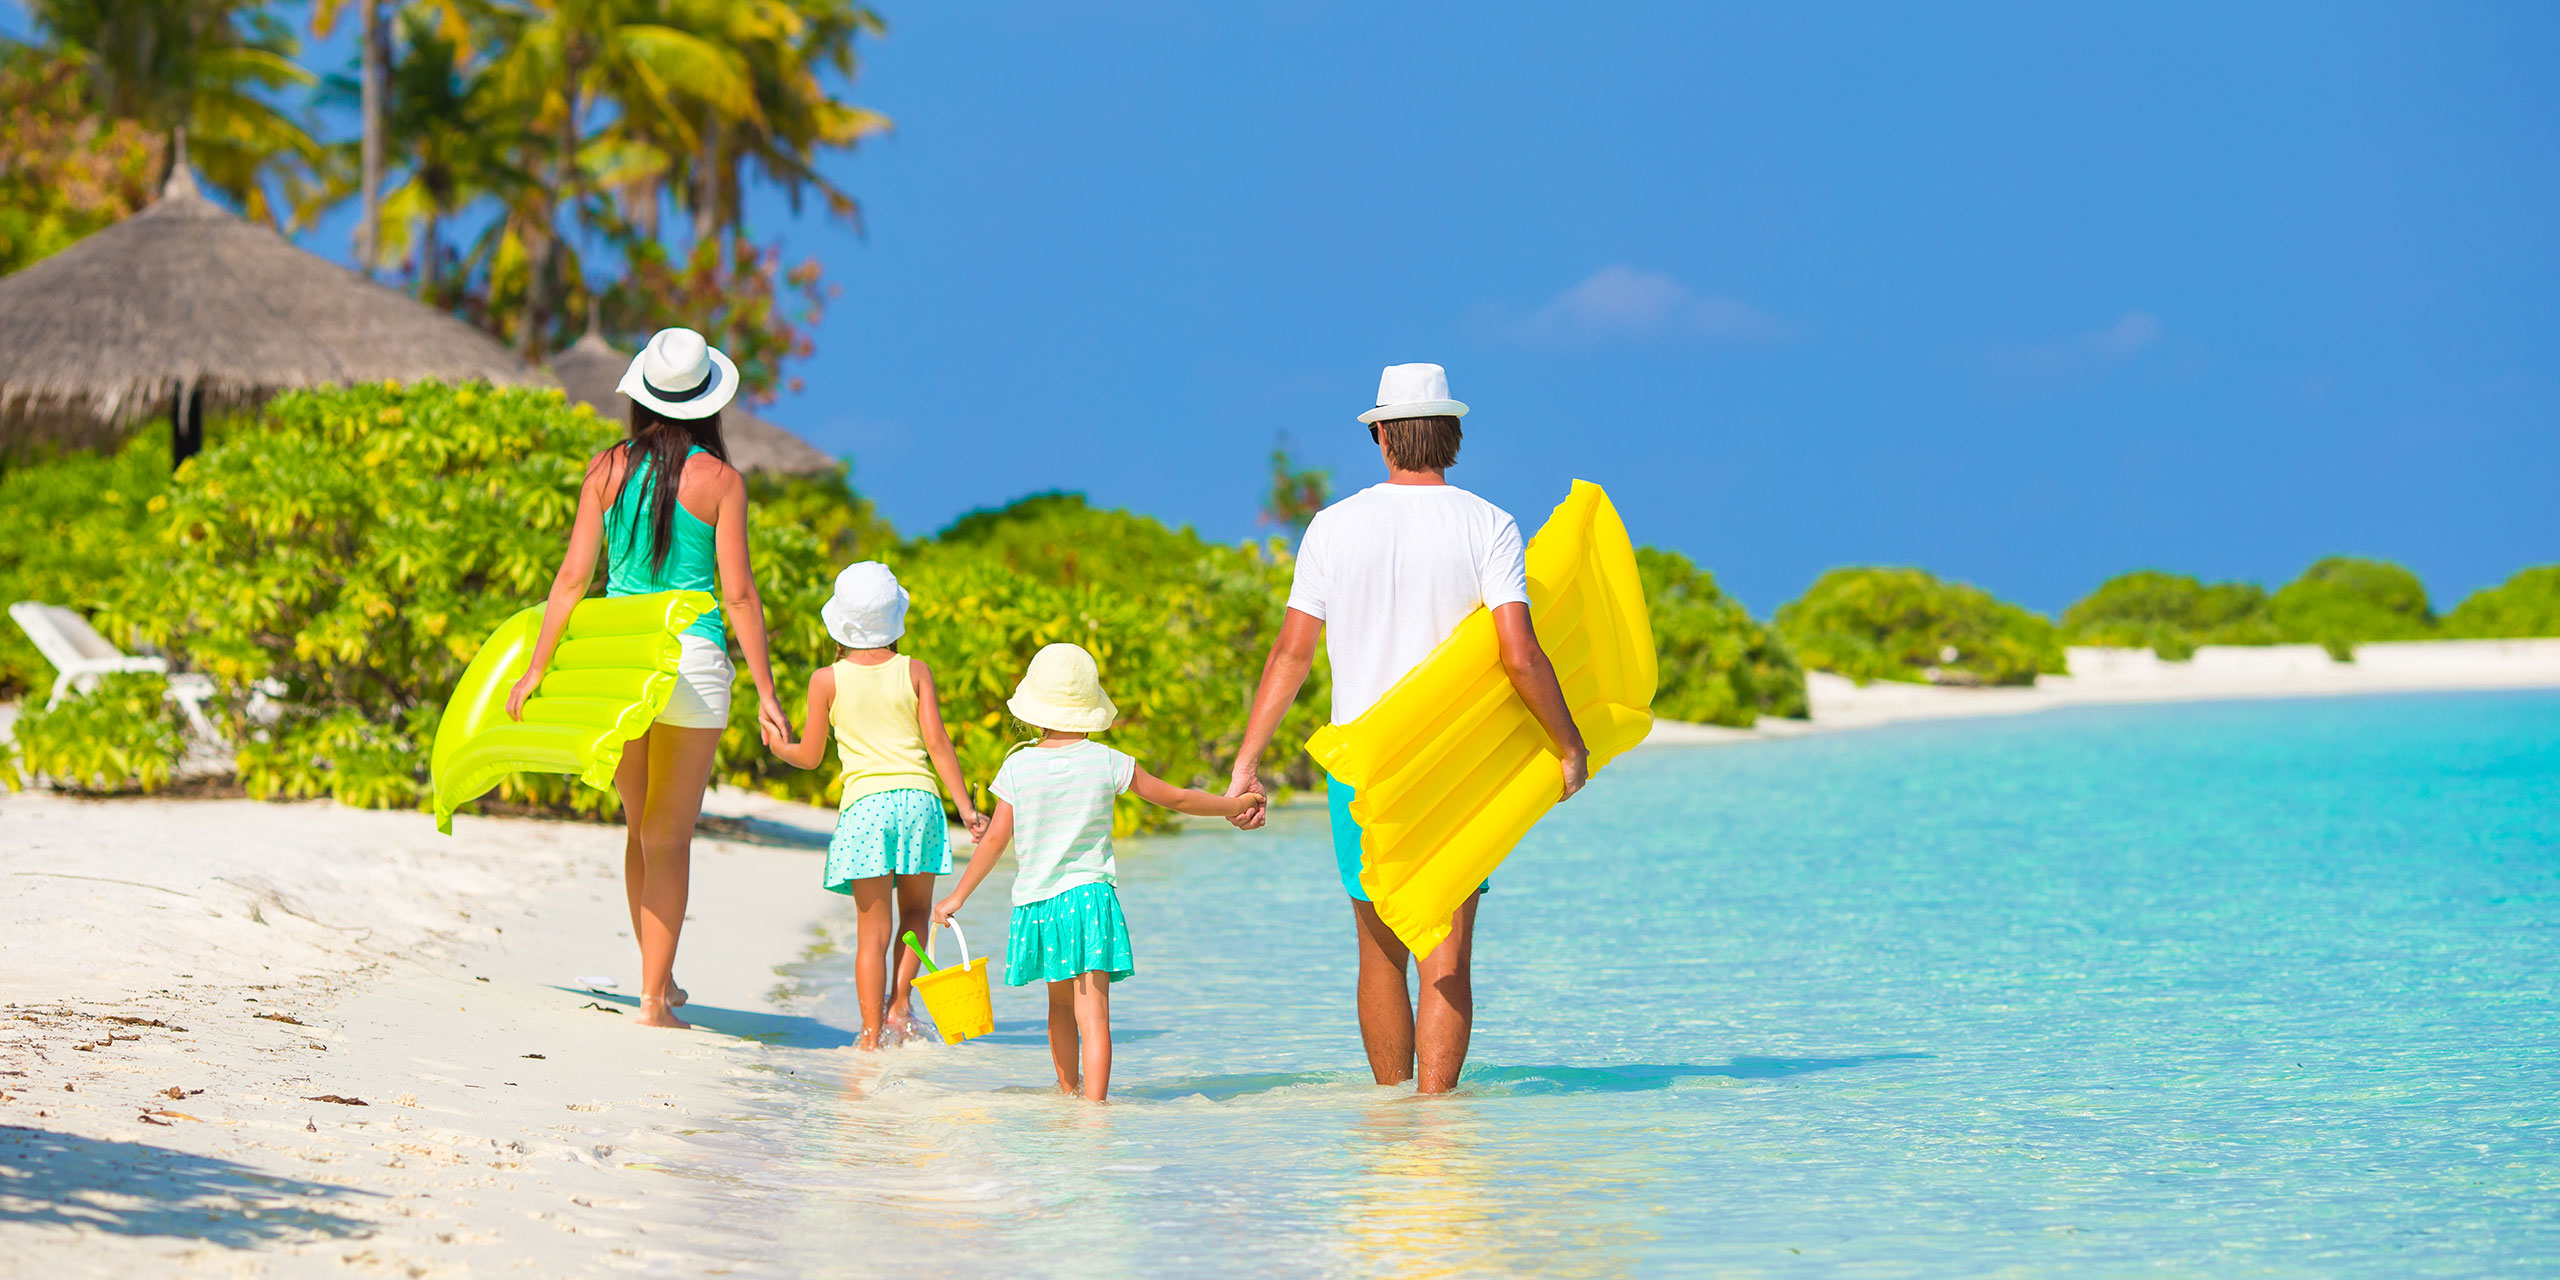 Family Walking on Caribbean Beach; Courtesy of TravnikovStudio/Shutterstock.com